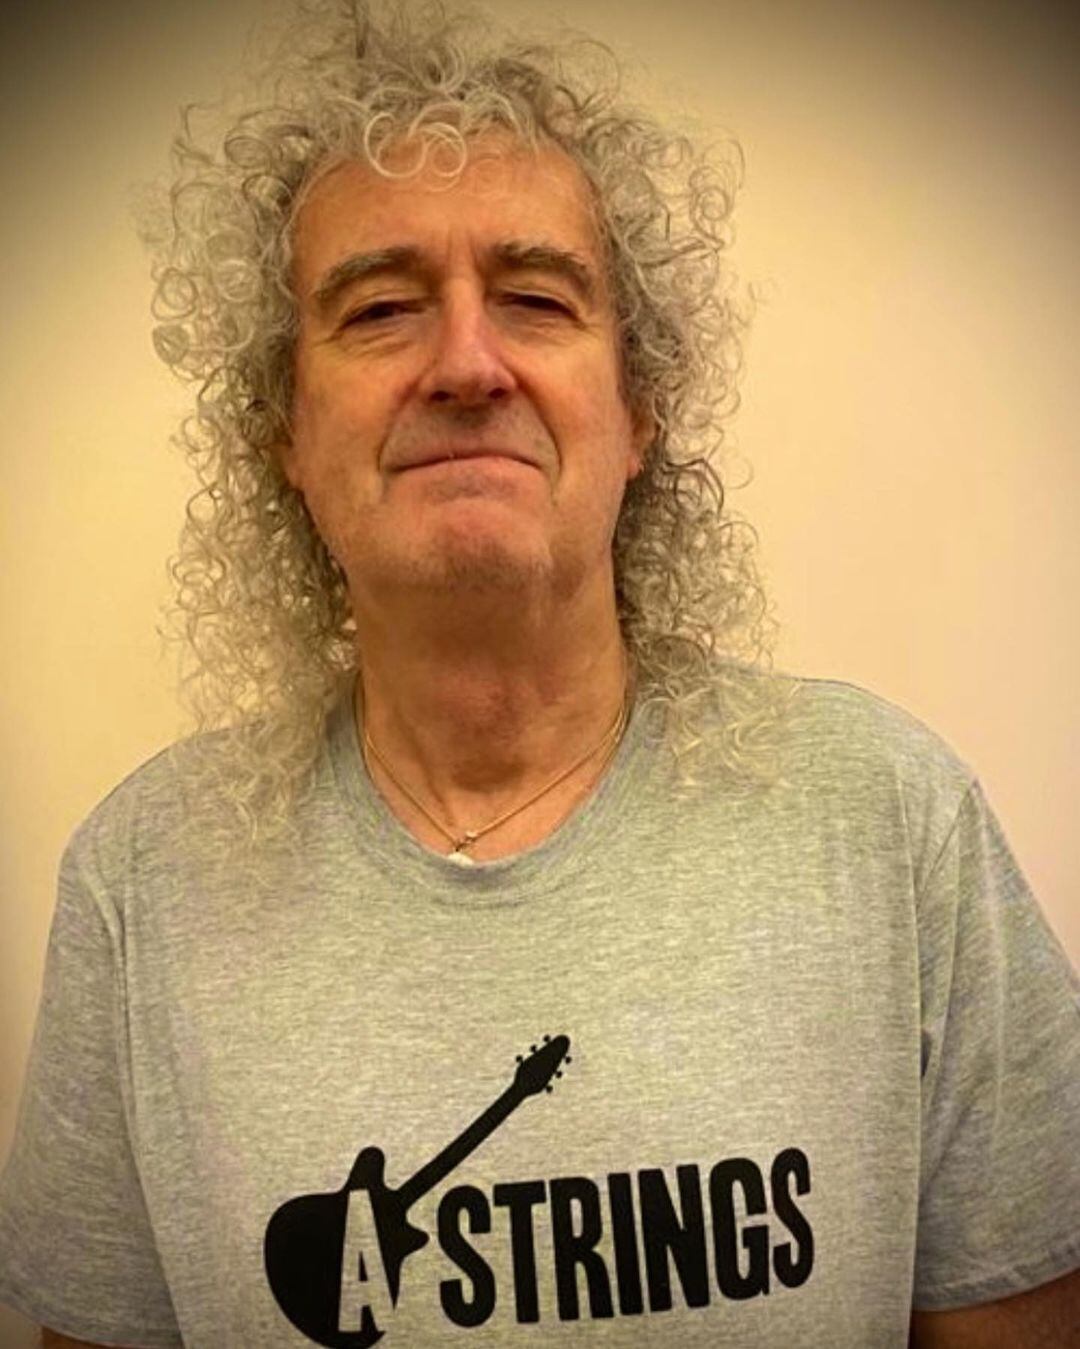 Brian May, guitarrista de Queen, tiene Covid-19: “Han sido unos días realmente horribles”